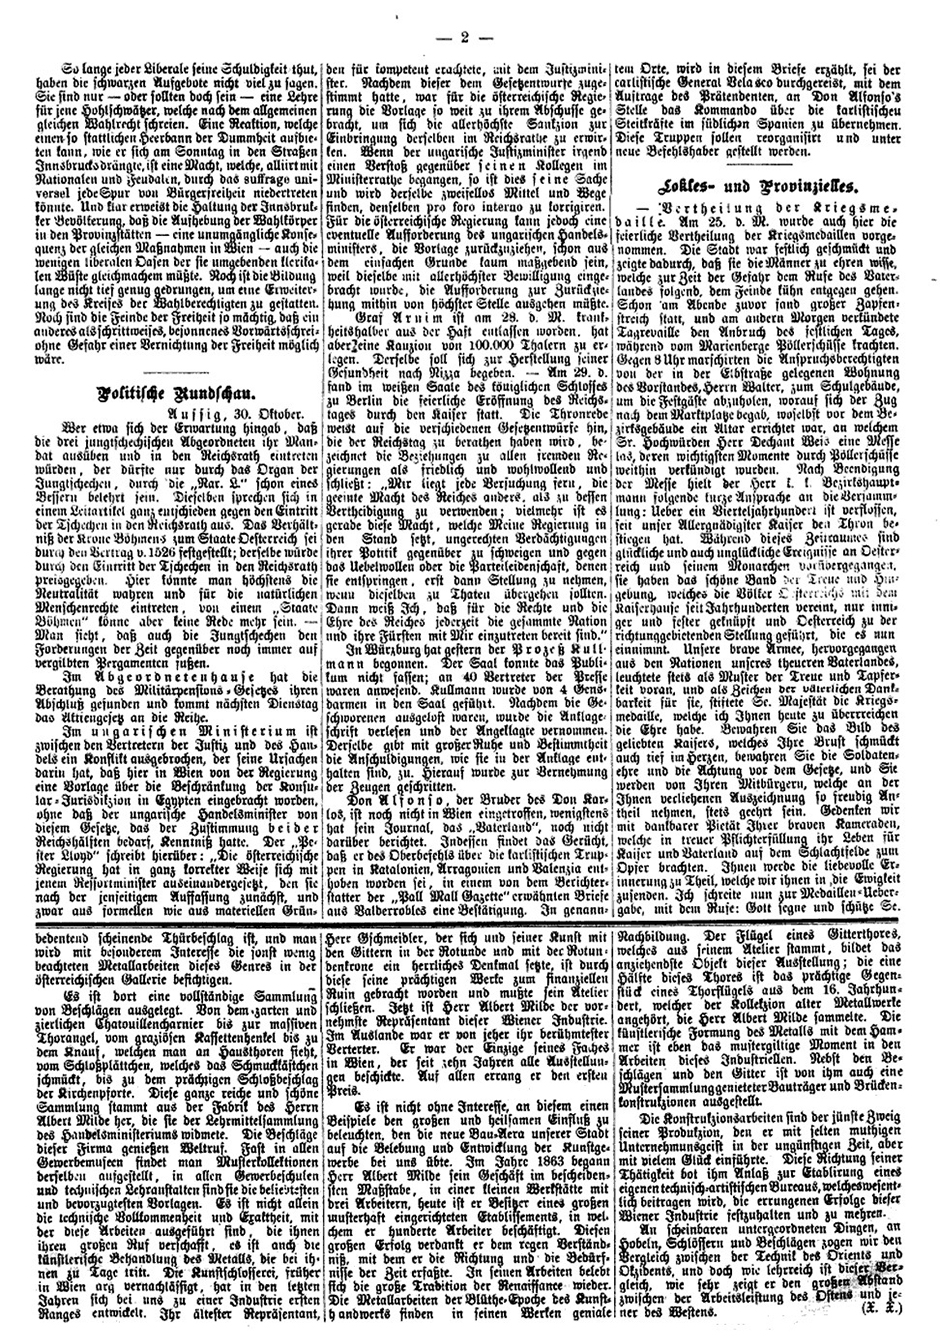 Aussiger Anzeiger, Samstag den 31. Oktober 1874, Seite 2